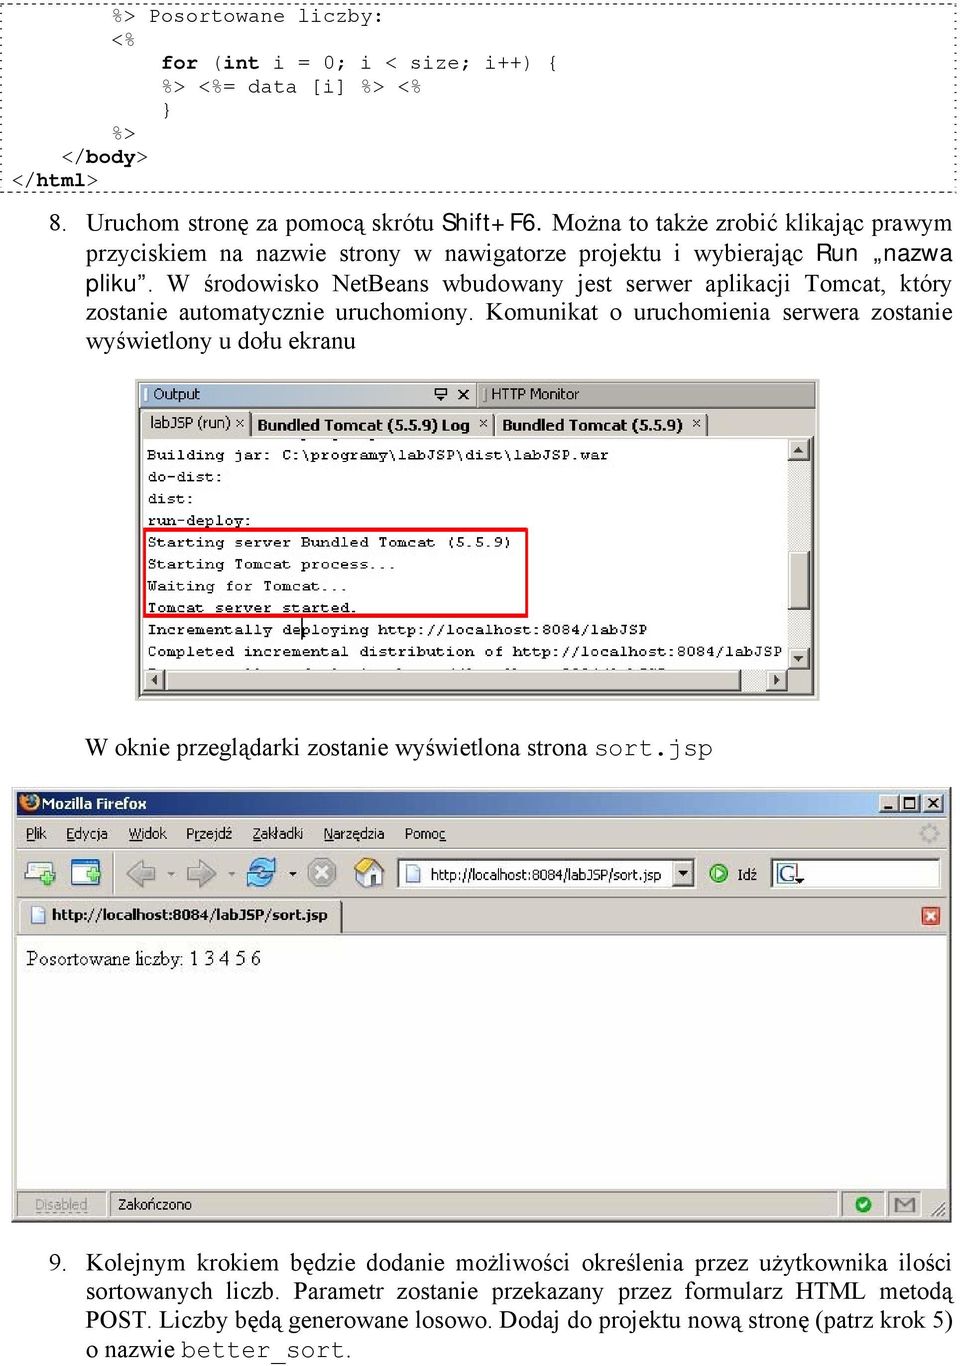 W środowisko NetBeans wbudowany jest serwer aplikacji Tomcat, który zostanie automatycznie uruchomiony.